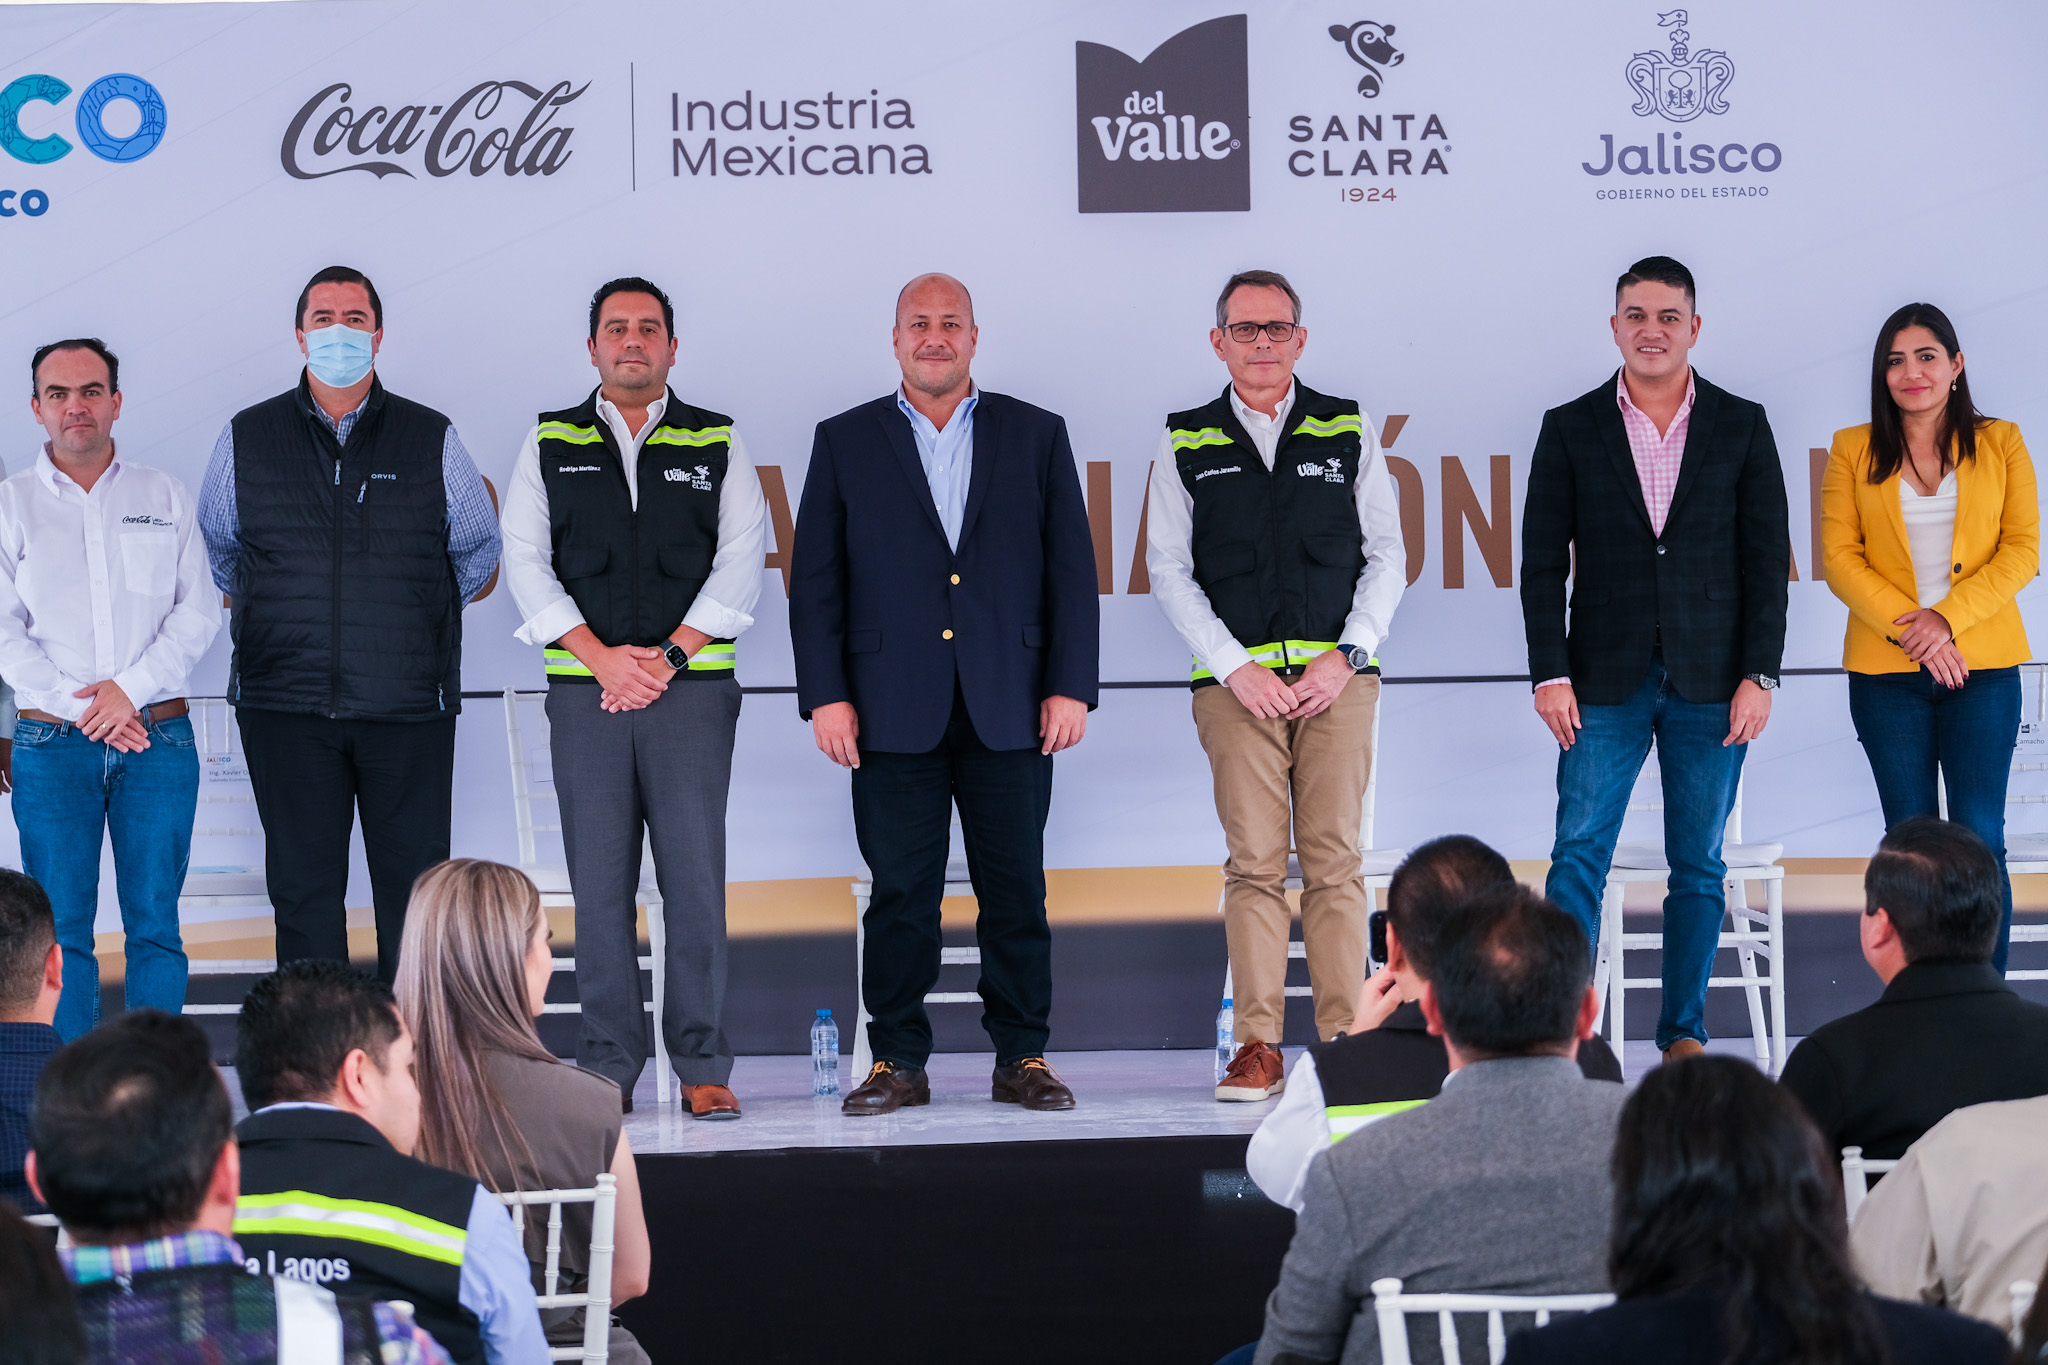 El evento se realizó en presencia del gobernador de Jalisco, Enrique Alfaro Ramírez, y Juan Carlos Jaramillo, director general de Jugos del Valle – Santa Clara.